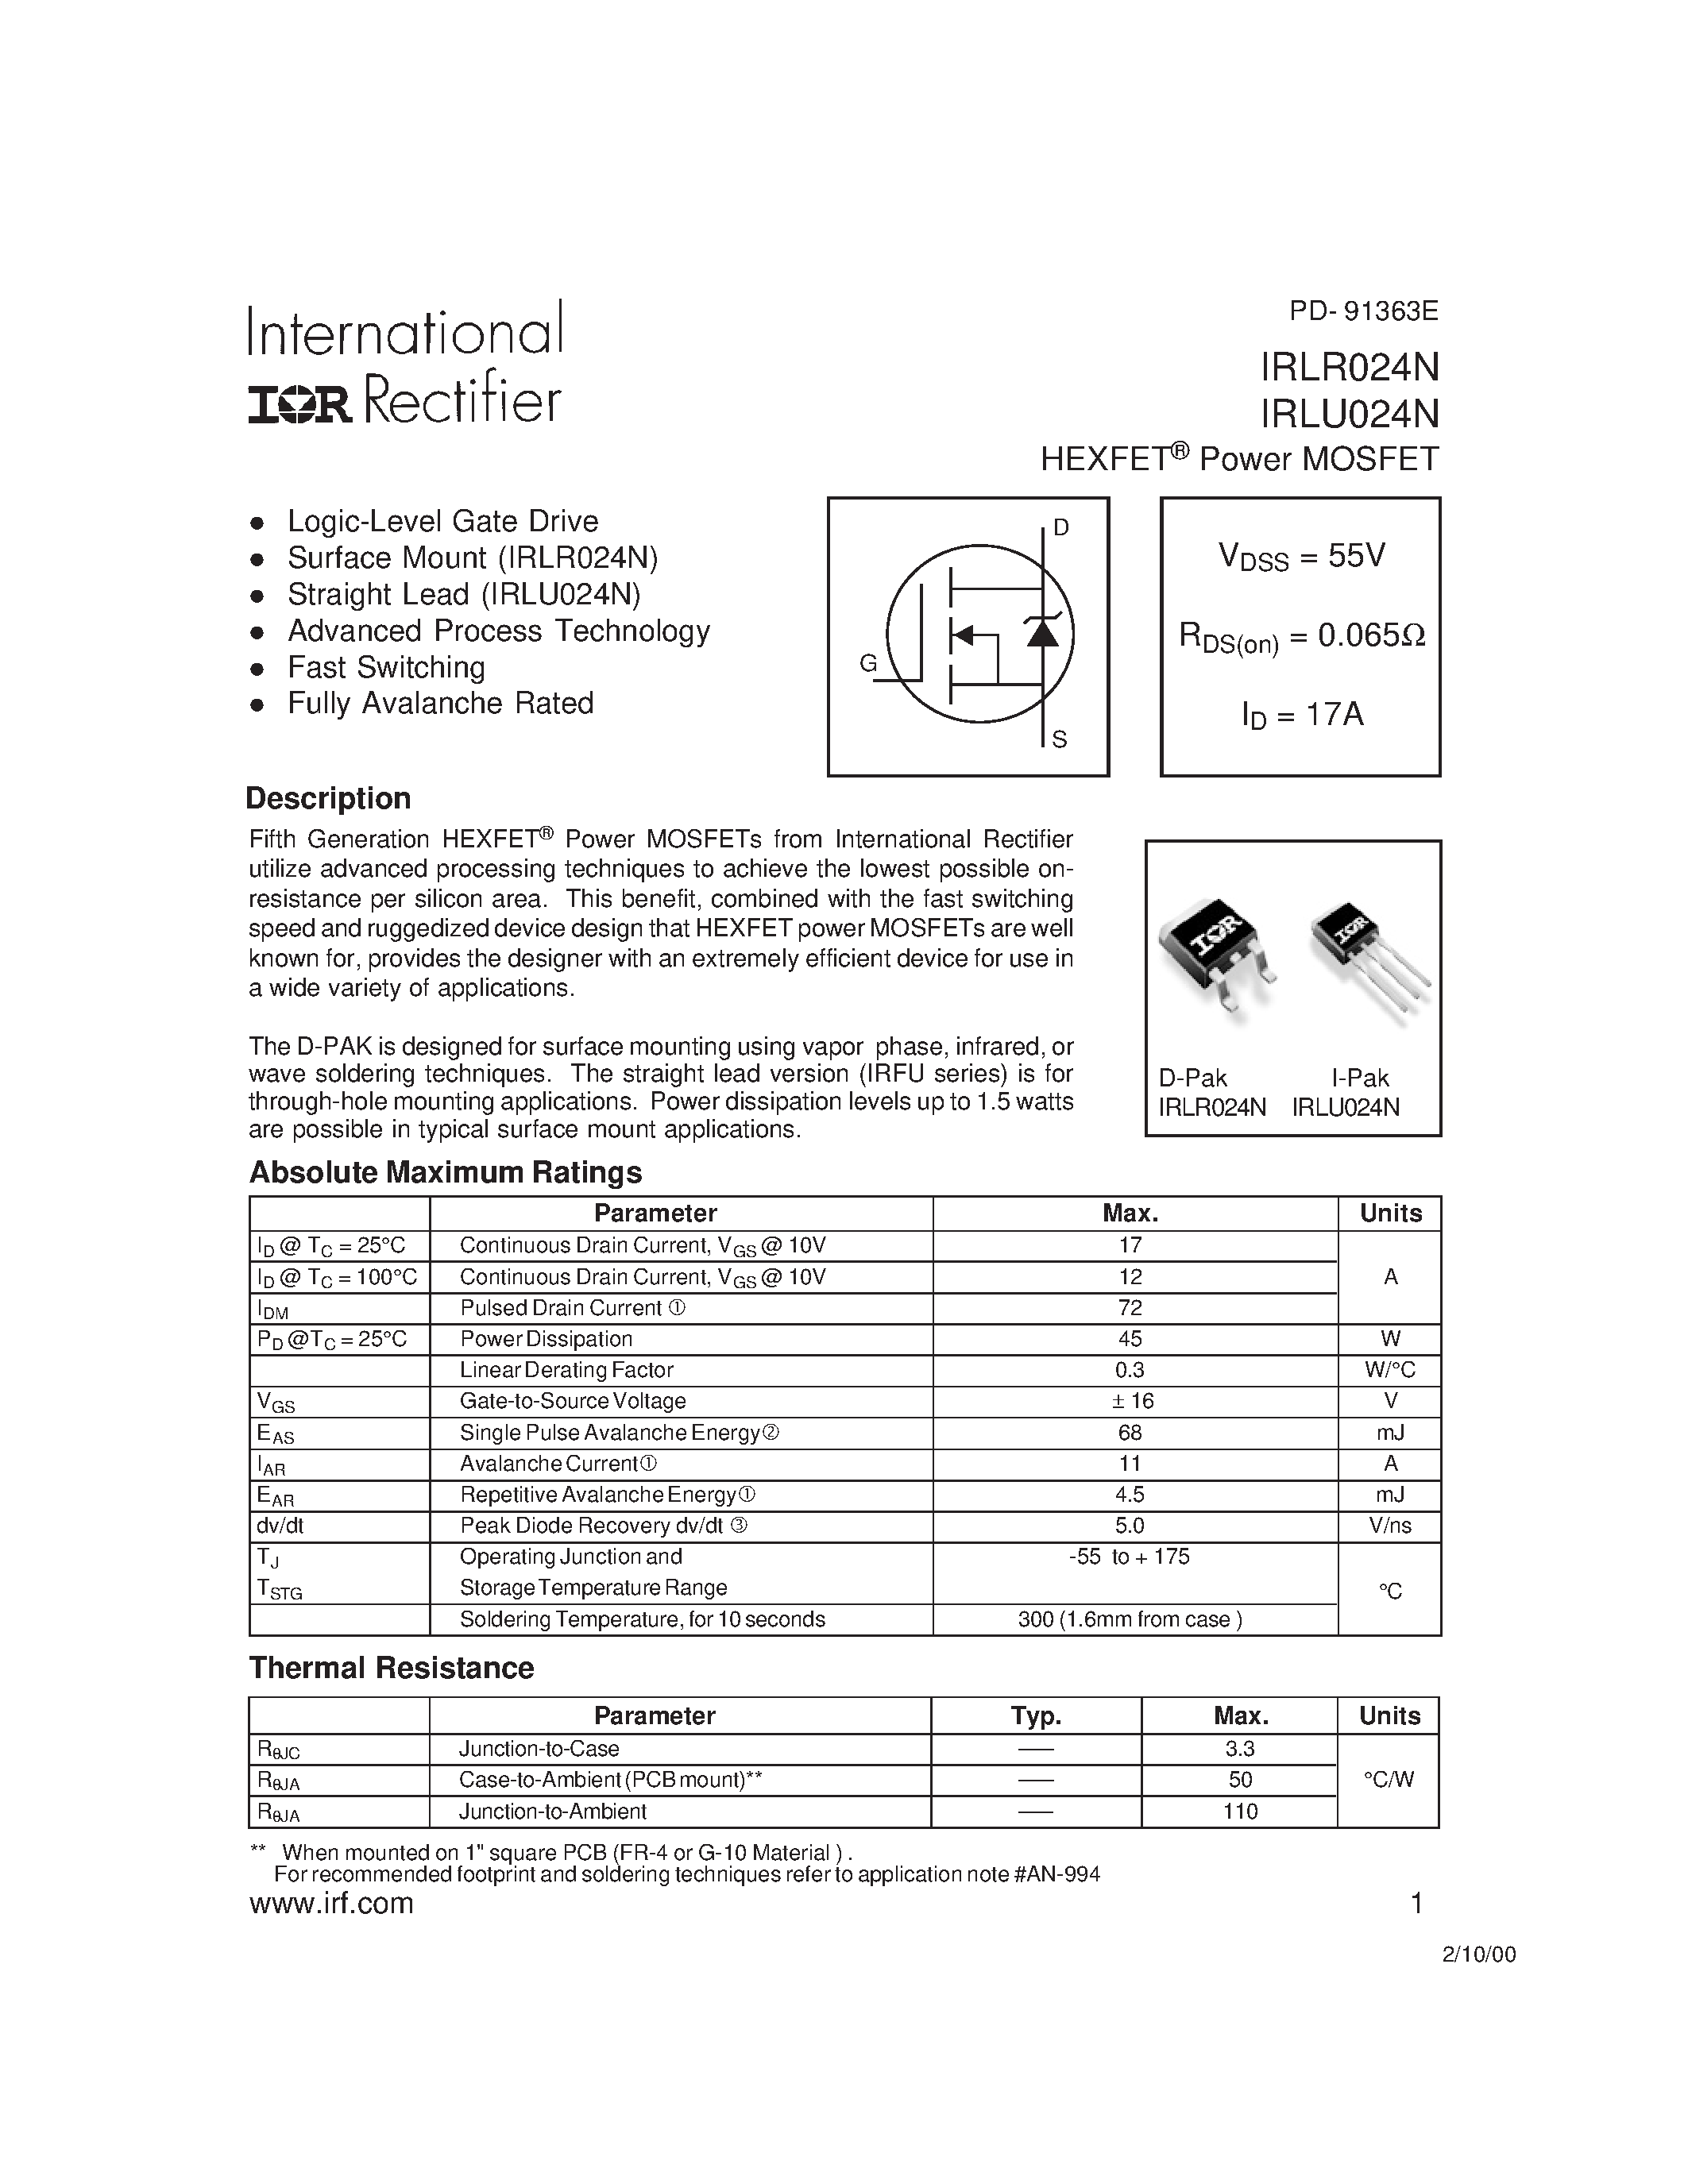 Datasheet IRLR024N - (IRLU/R024N) Power MOSFET page 1